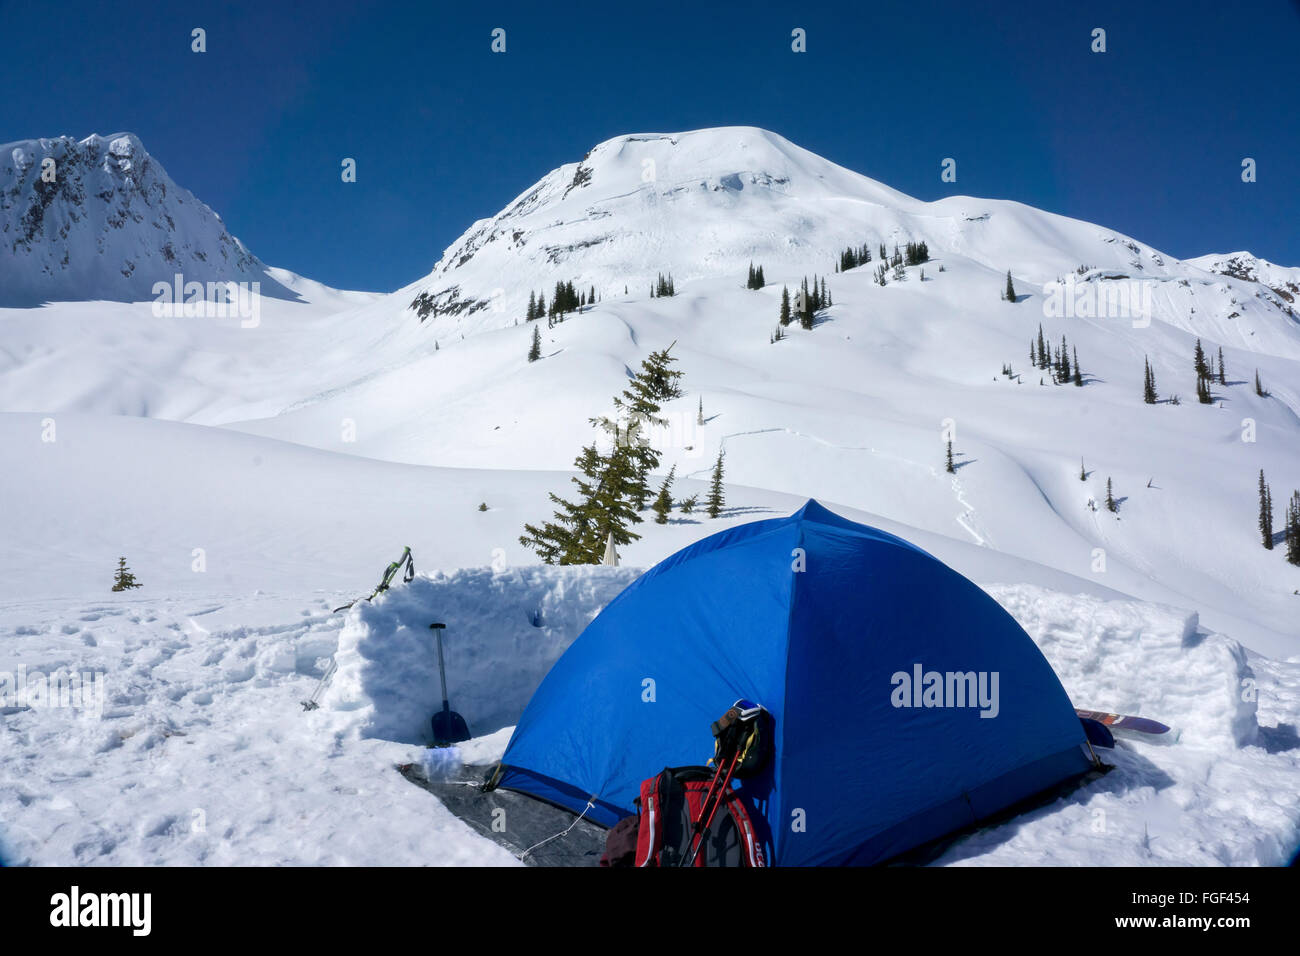 Eine blaue Zelt Zelte Backcountry Durg Wter British Columbia mit einer letzten Lawine auf der nahe gelegenen Hütte Stockfoto